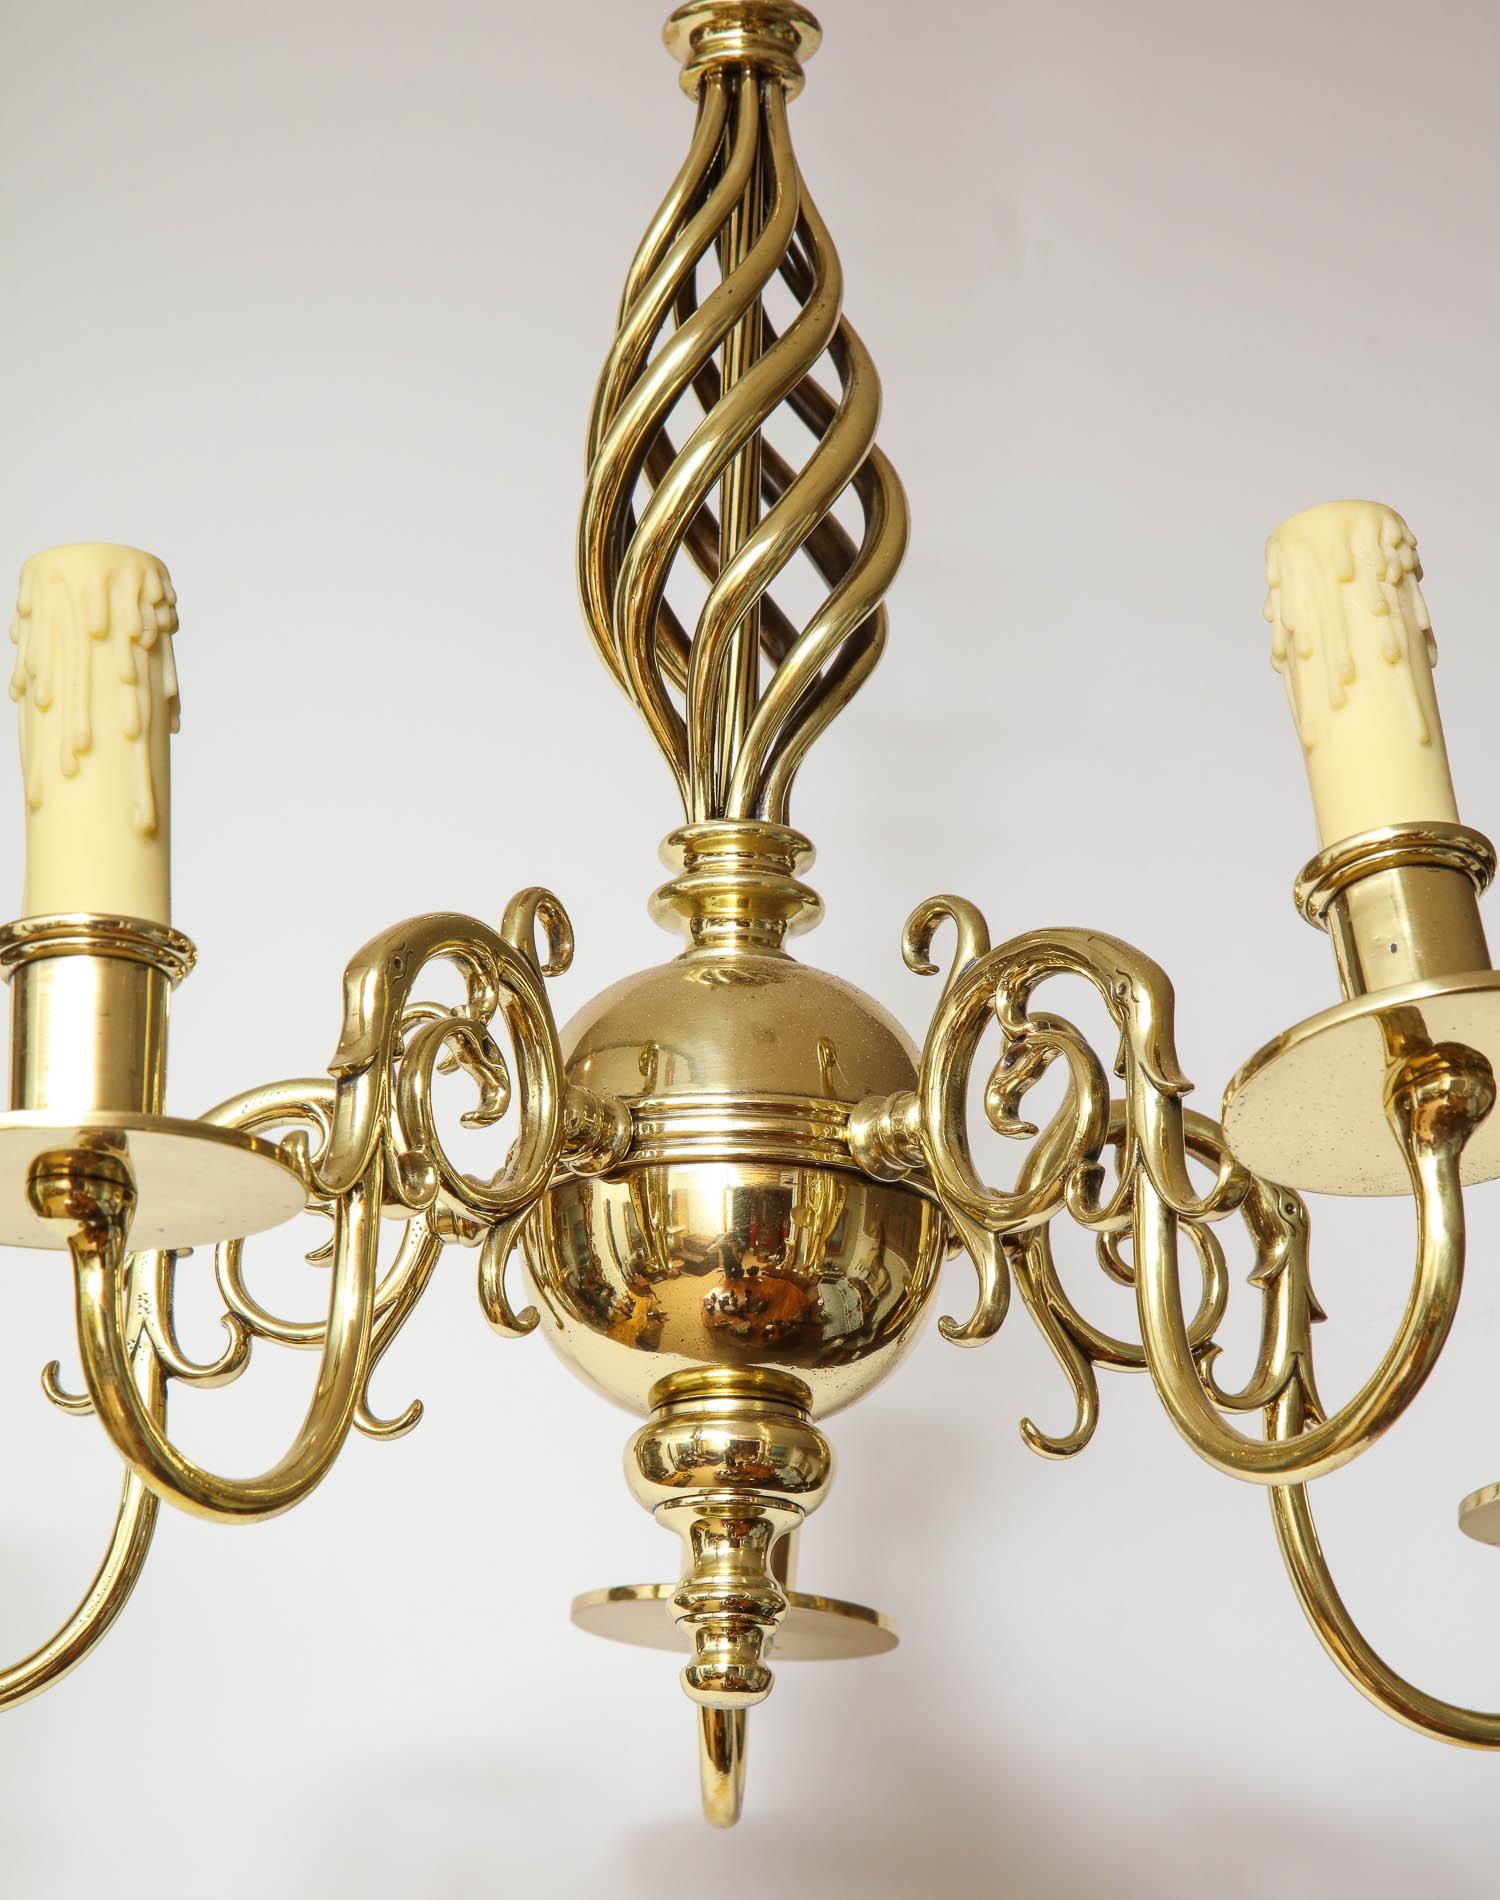 Brass Chandelier with Open Spiral Centre (20. Jahrhundert)